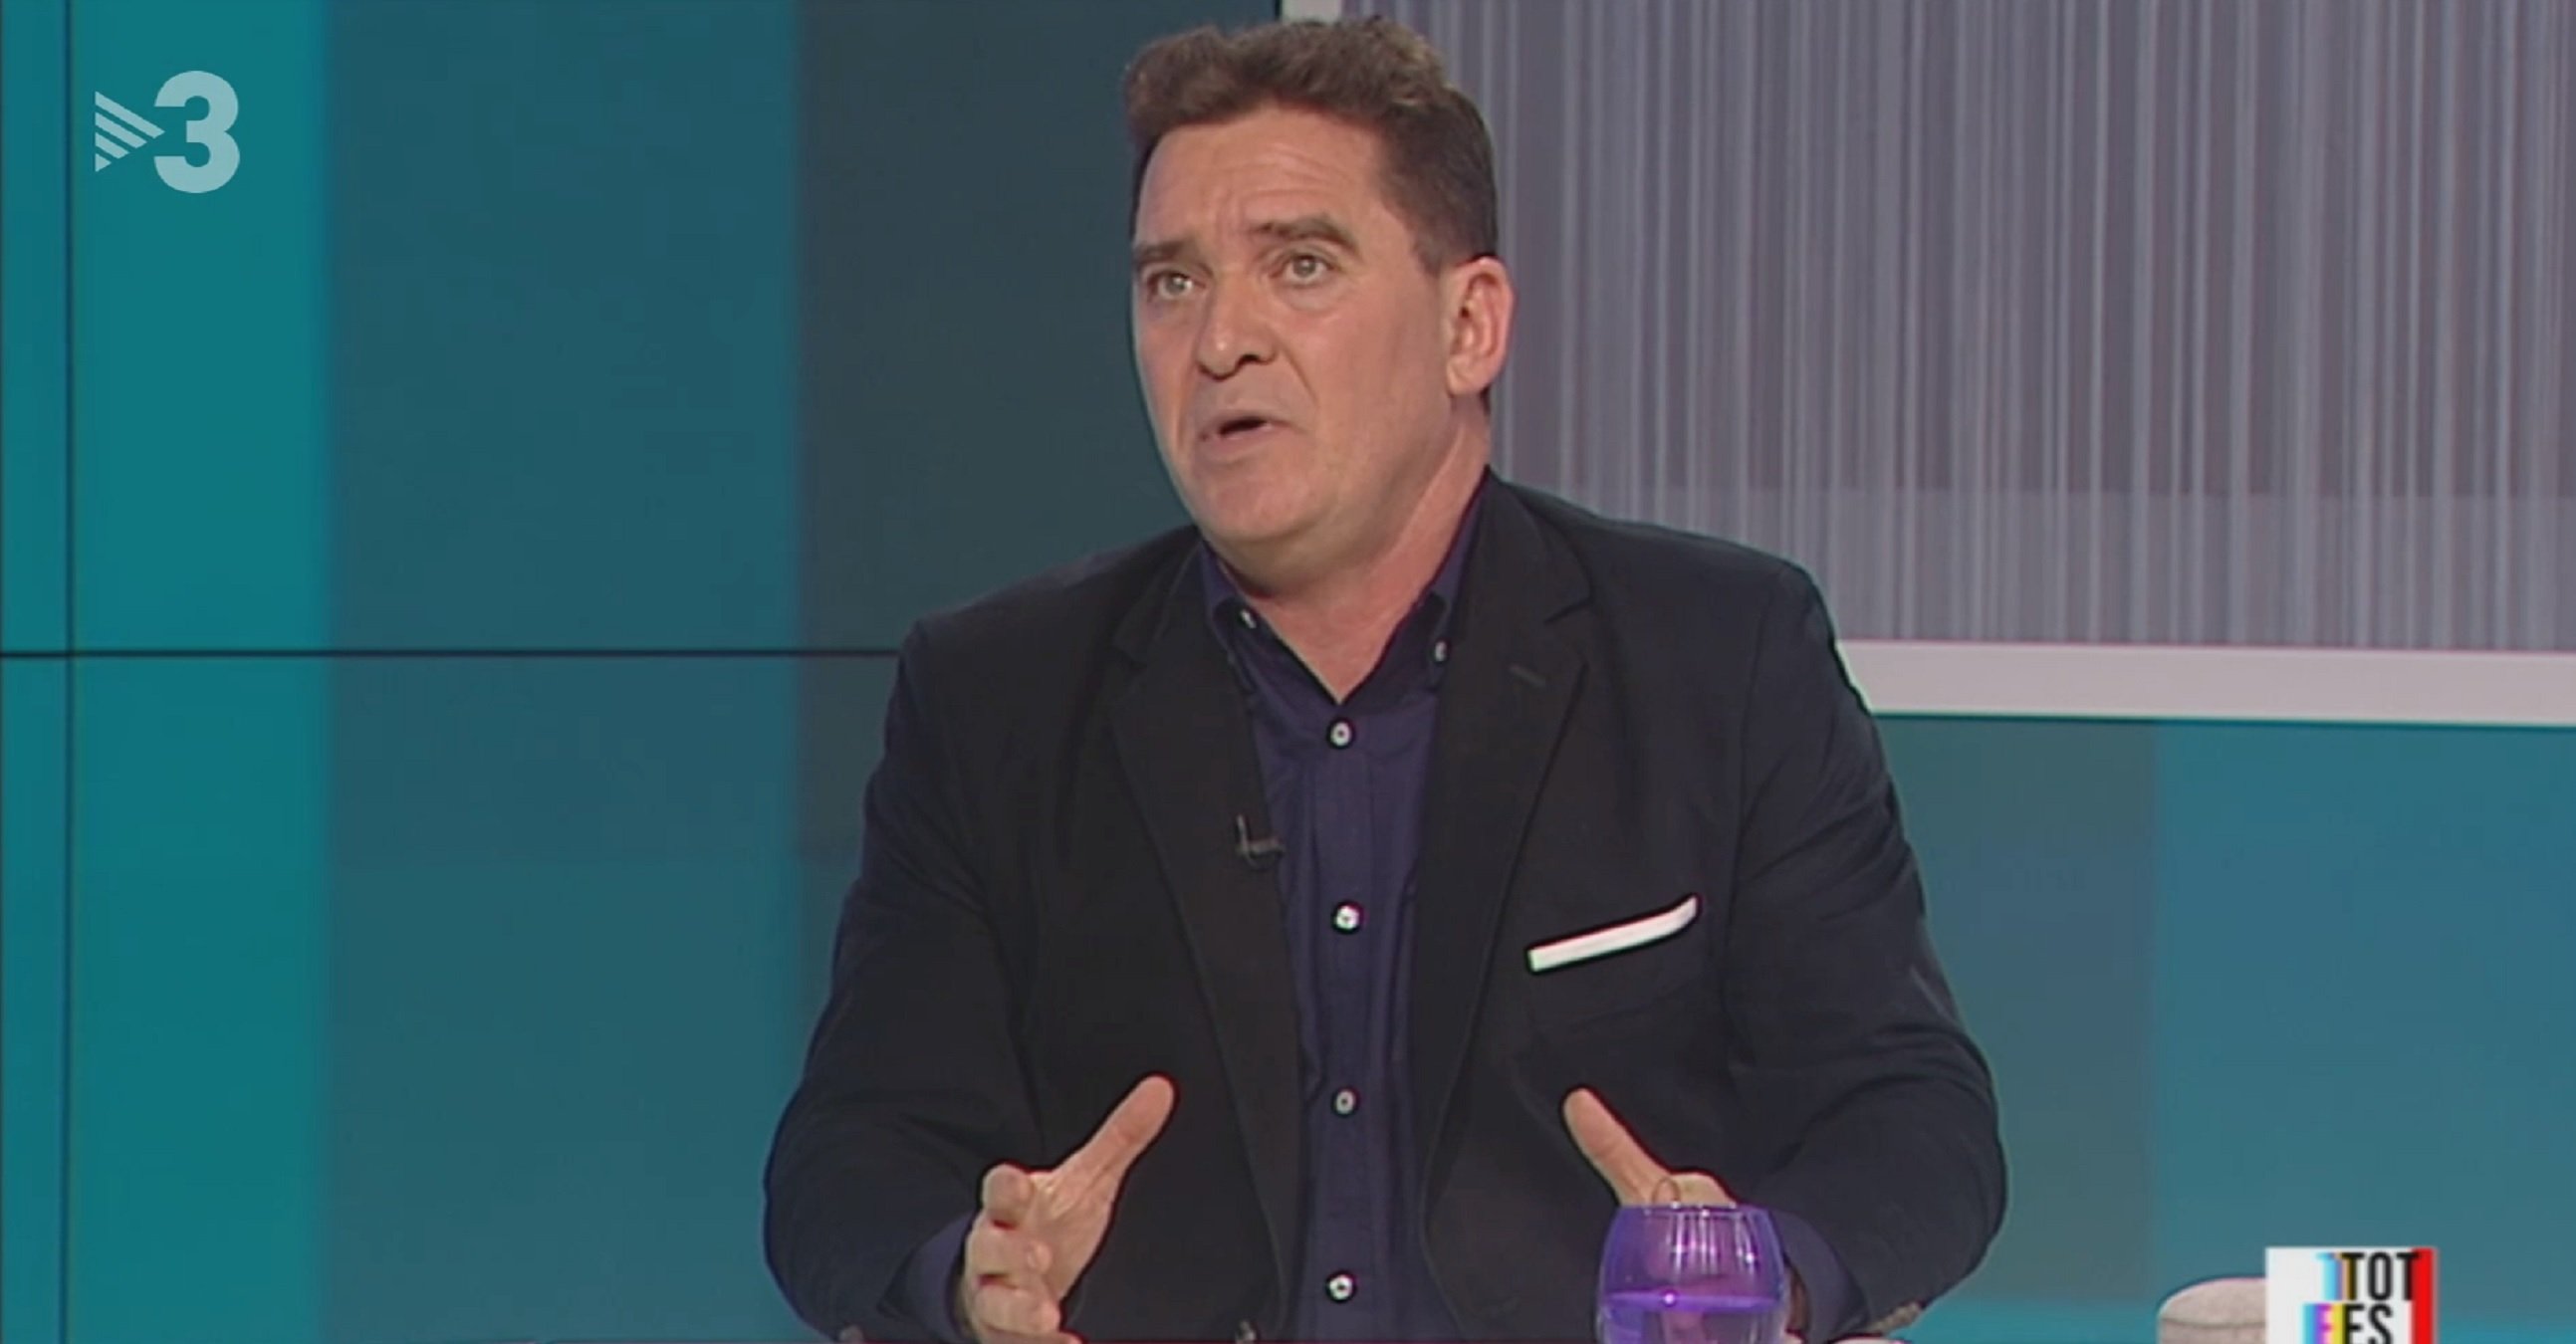 Espectadors de TV3 farts de Carlos Quílez al 'Tot es mou': "maleducat, cínic"